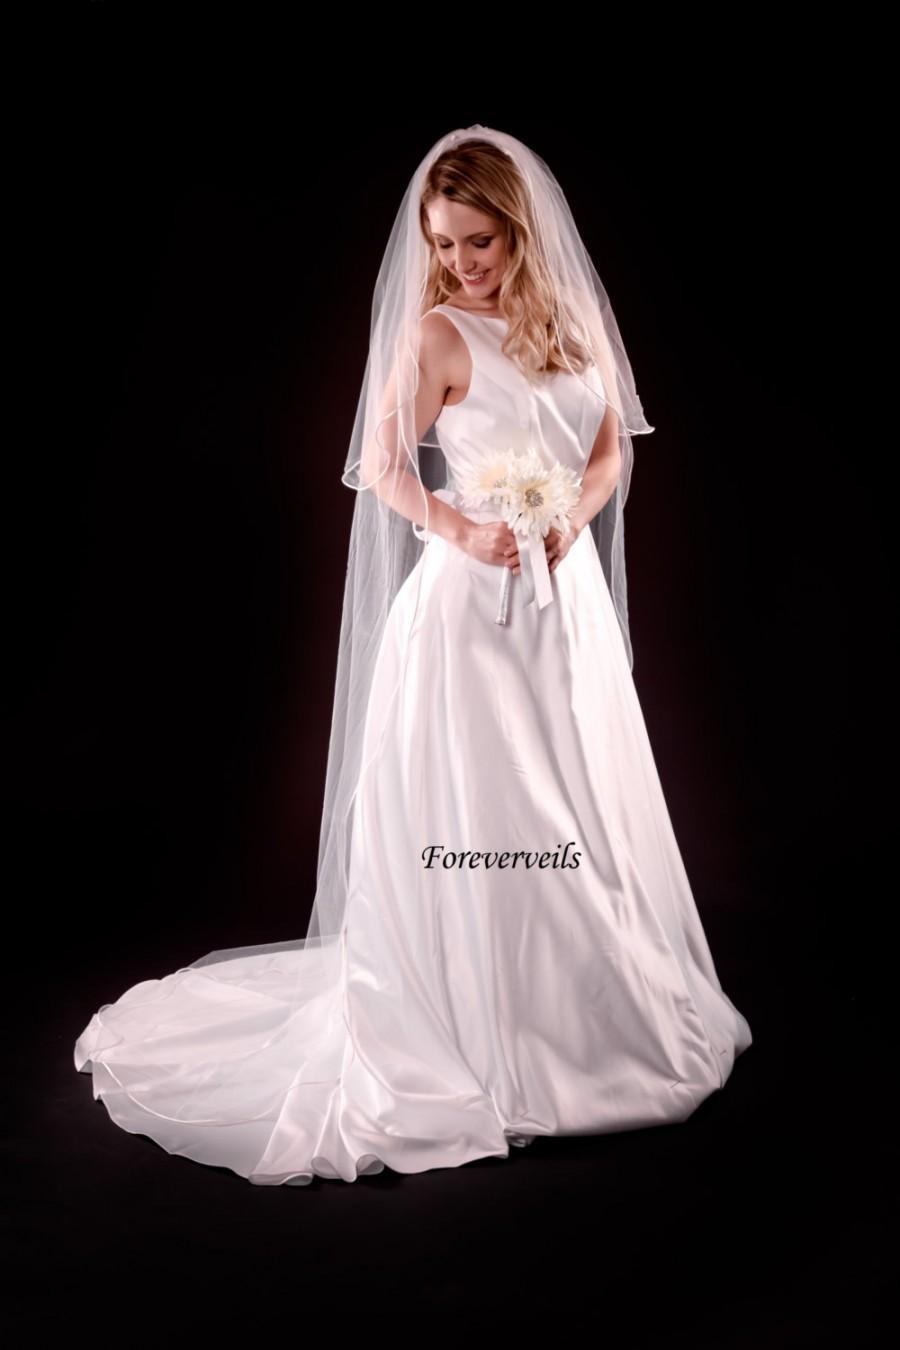 زفاف - 2 layer cathedral wedding veil long flowing bridal veil - white, ivory, diamond white, champagne - cut edge satin edge